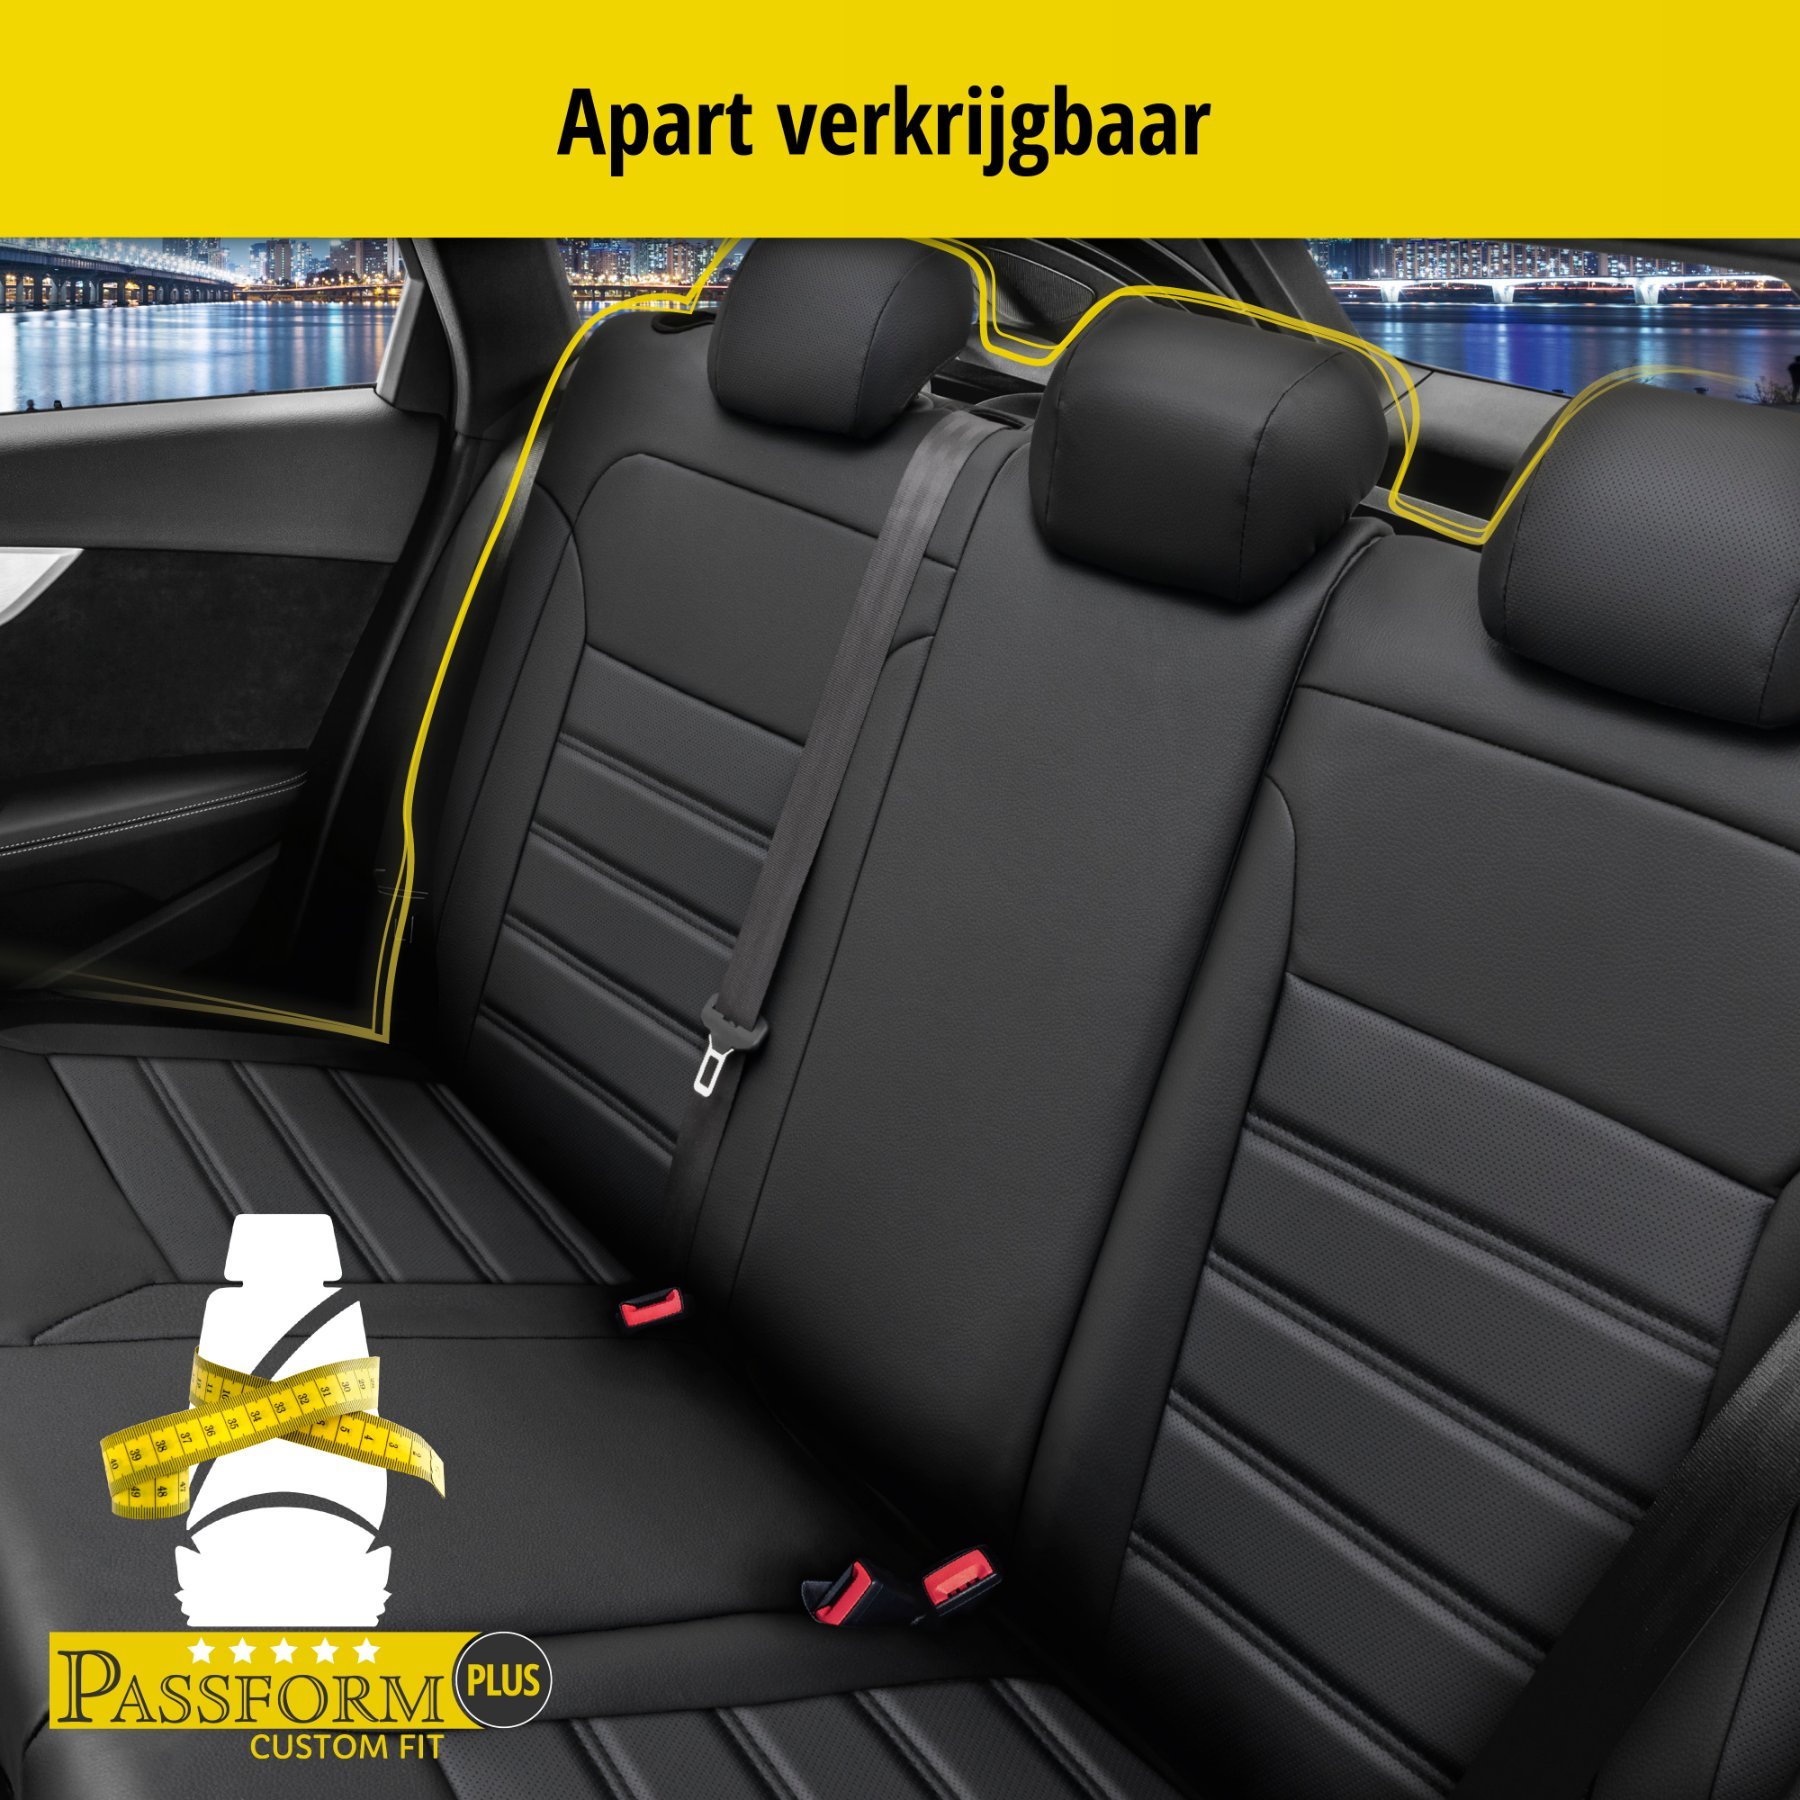 Auto stoelbekleding Robusto geschikt voor Mercedes-Benz C-Klasse 07/2013-Vandaag, 2 enkele zetelhoezen voor standard zetels